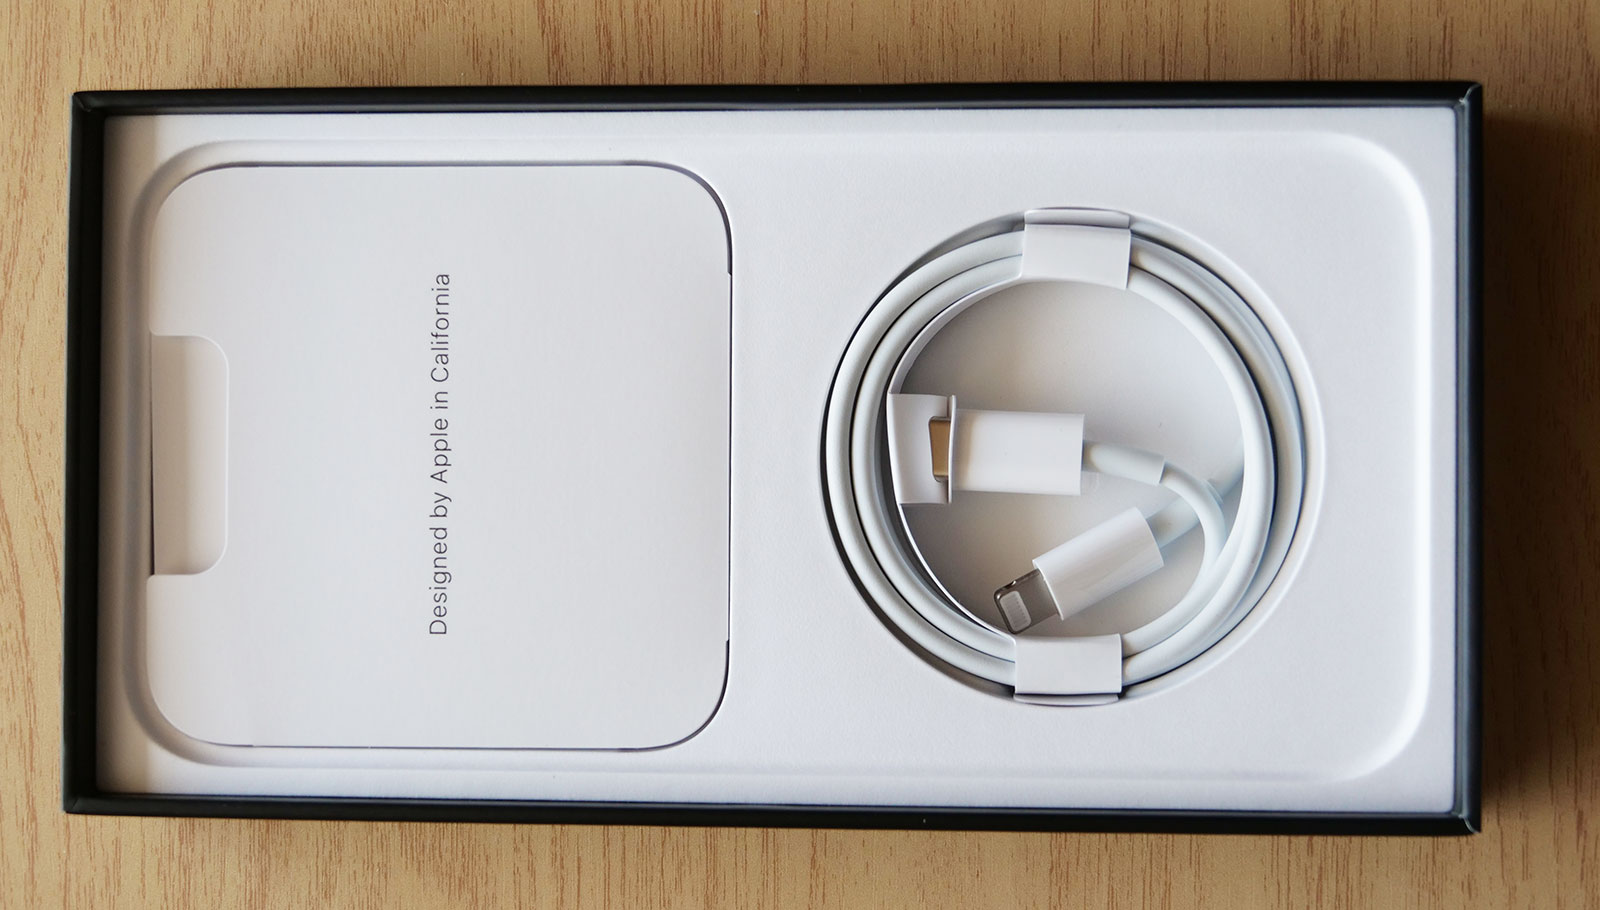 Rumores indican que los próximos iPhone incluirán cargadores USB-C